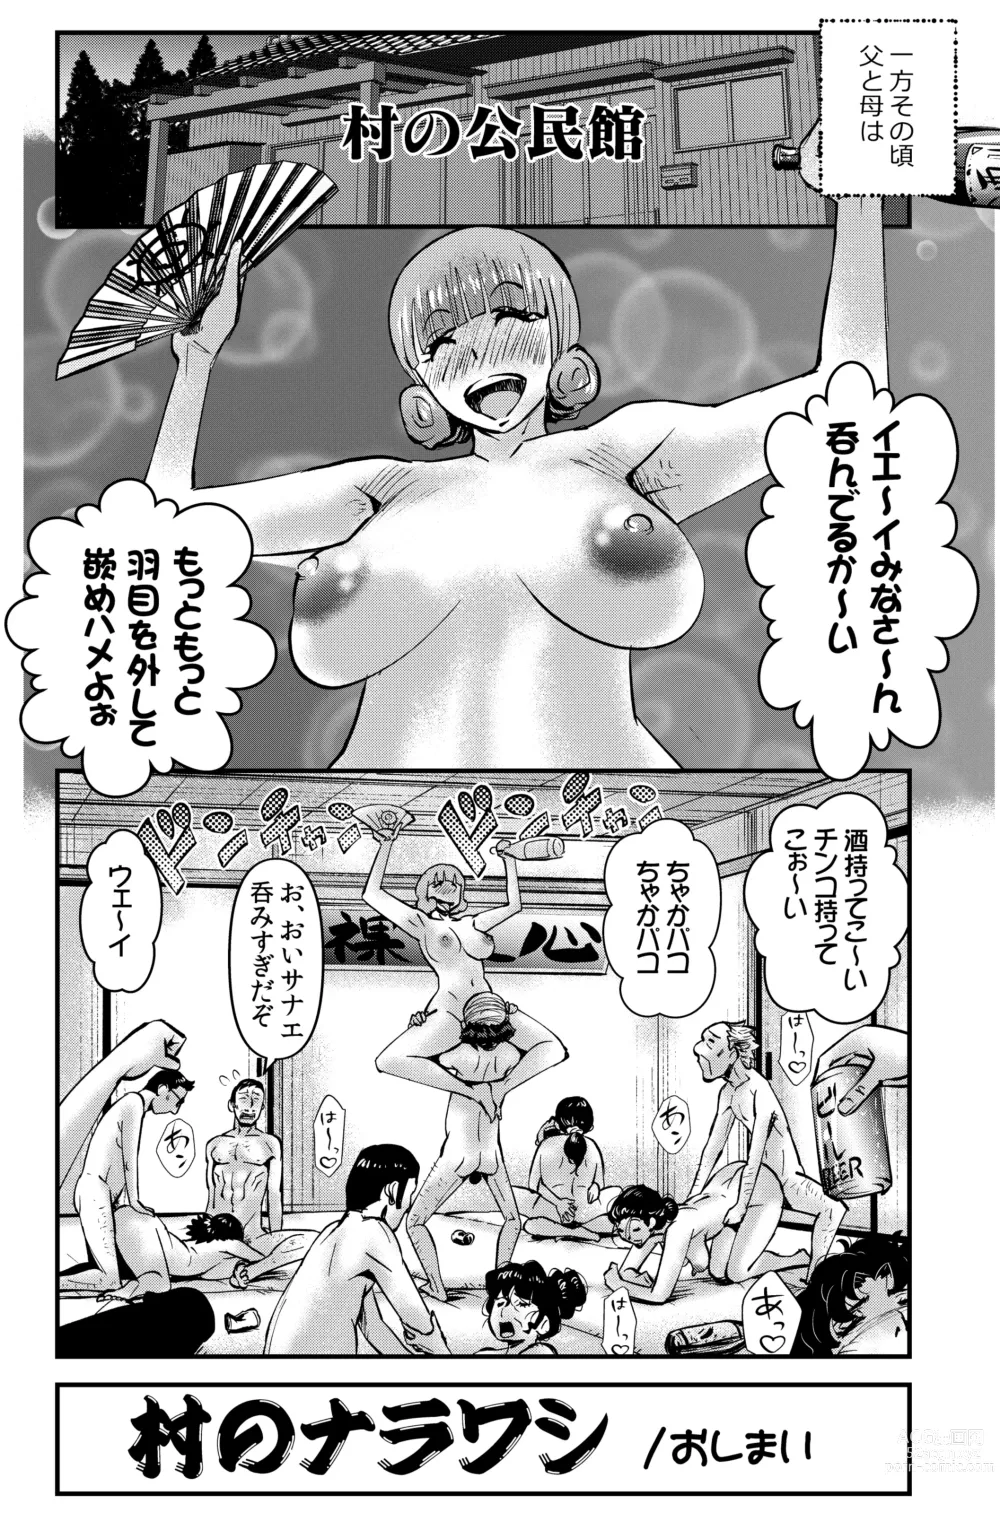 Page 32 of doujinshi Mura no Narawashi